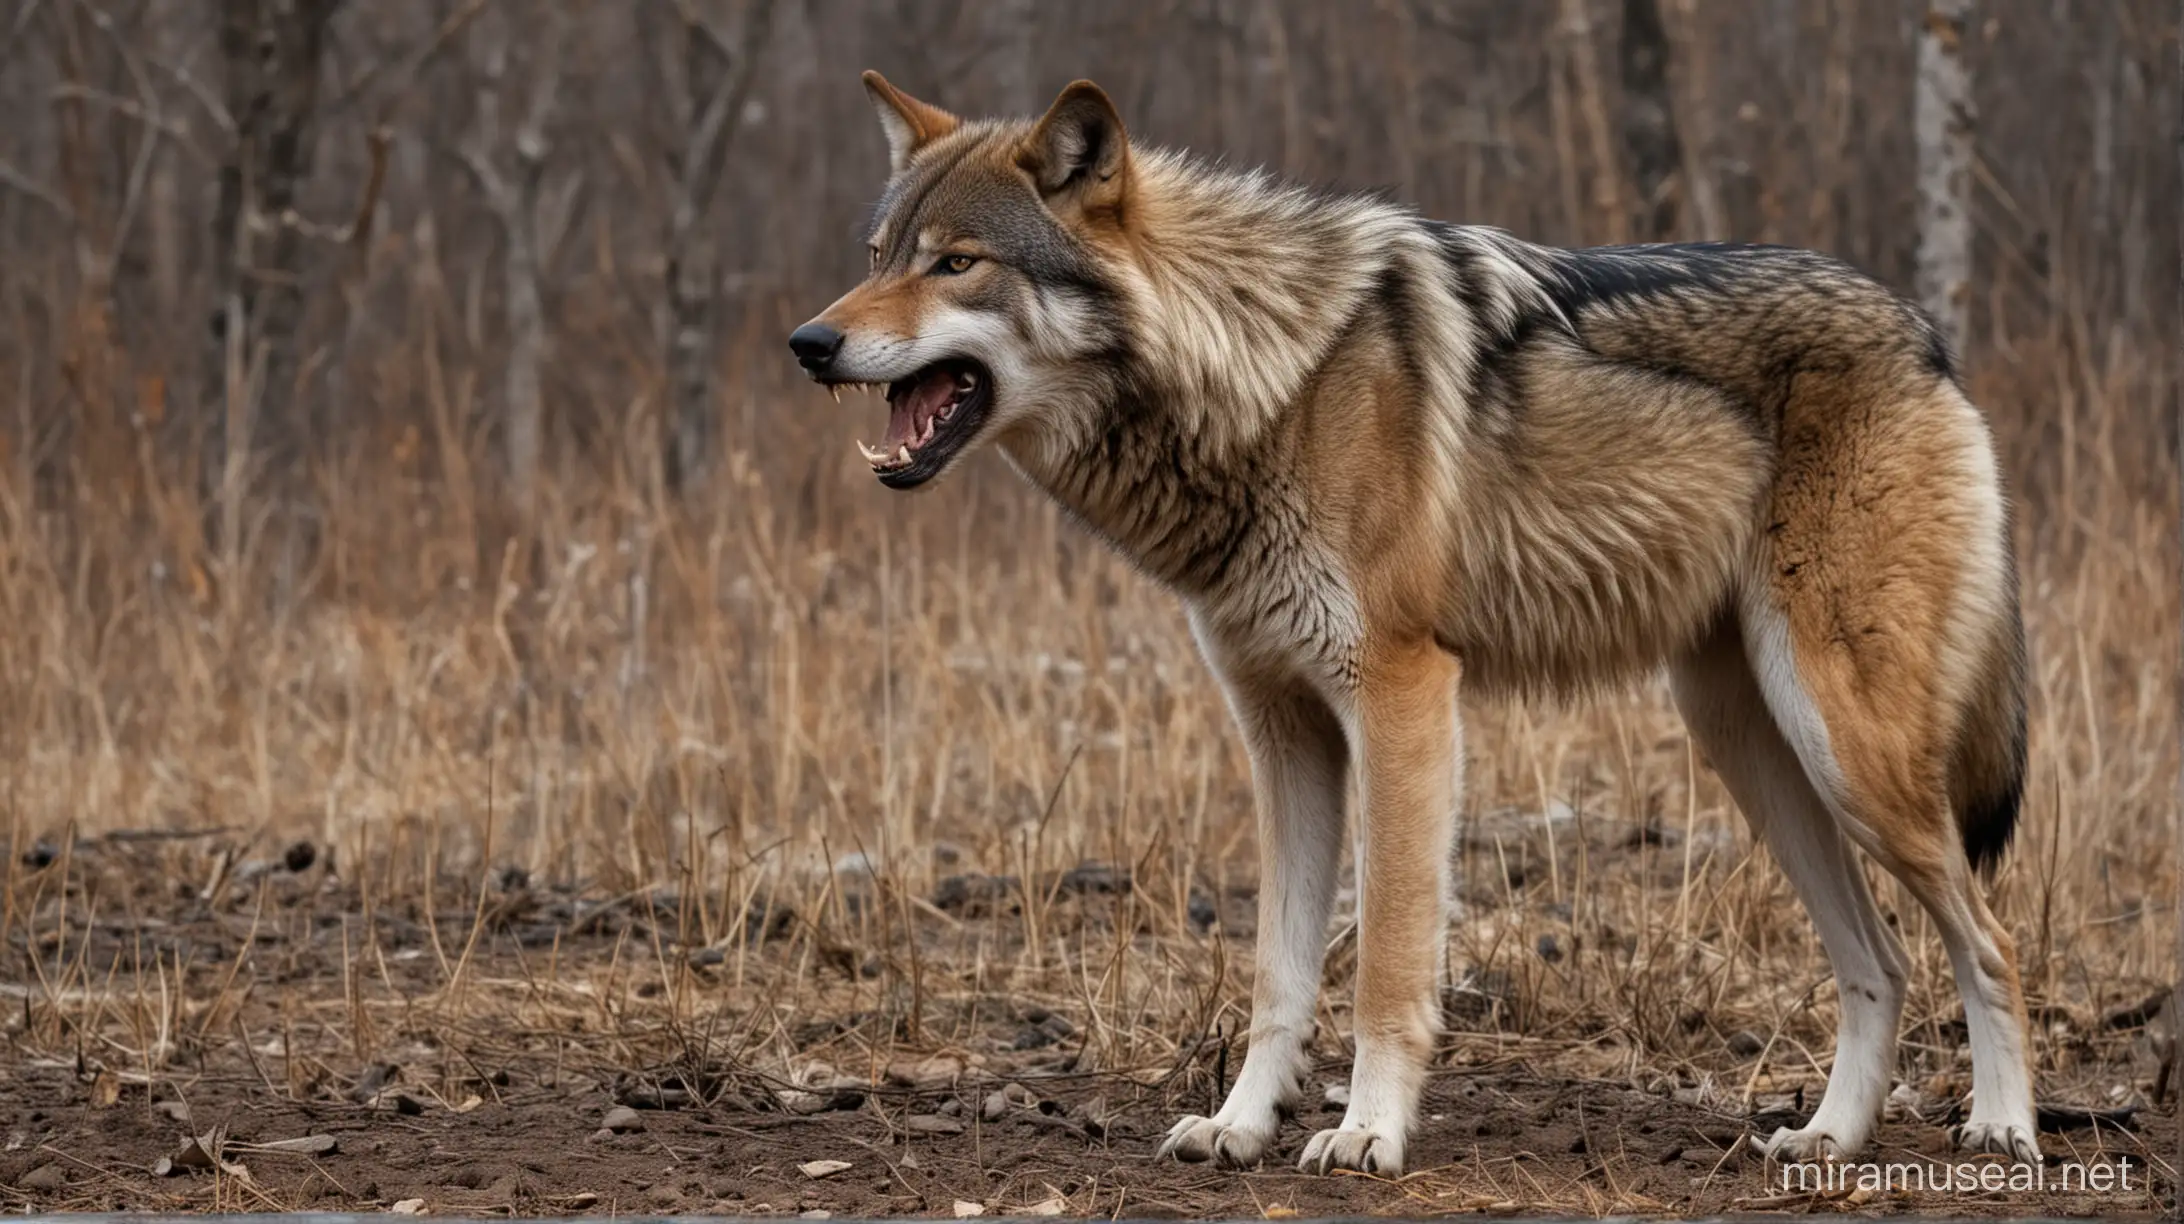 волк скалит зубы
полный рост
агрессия
угроза
ночь 